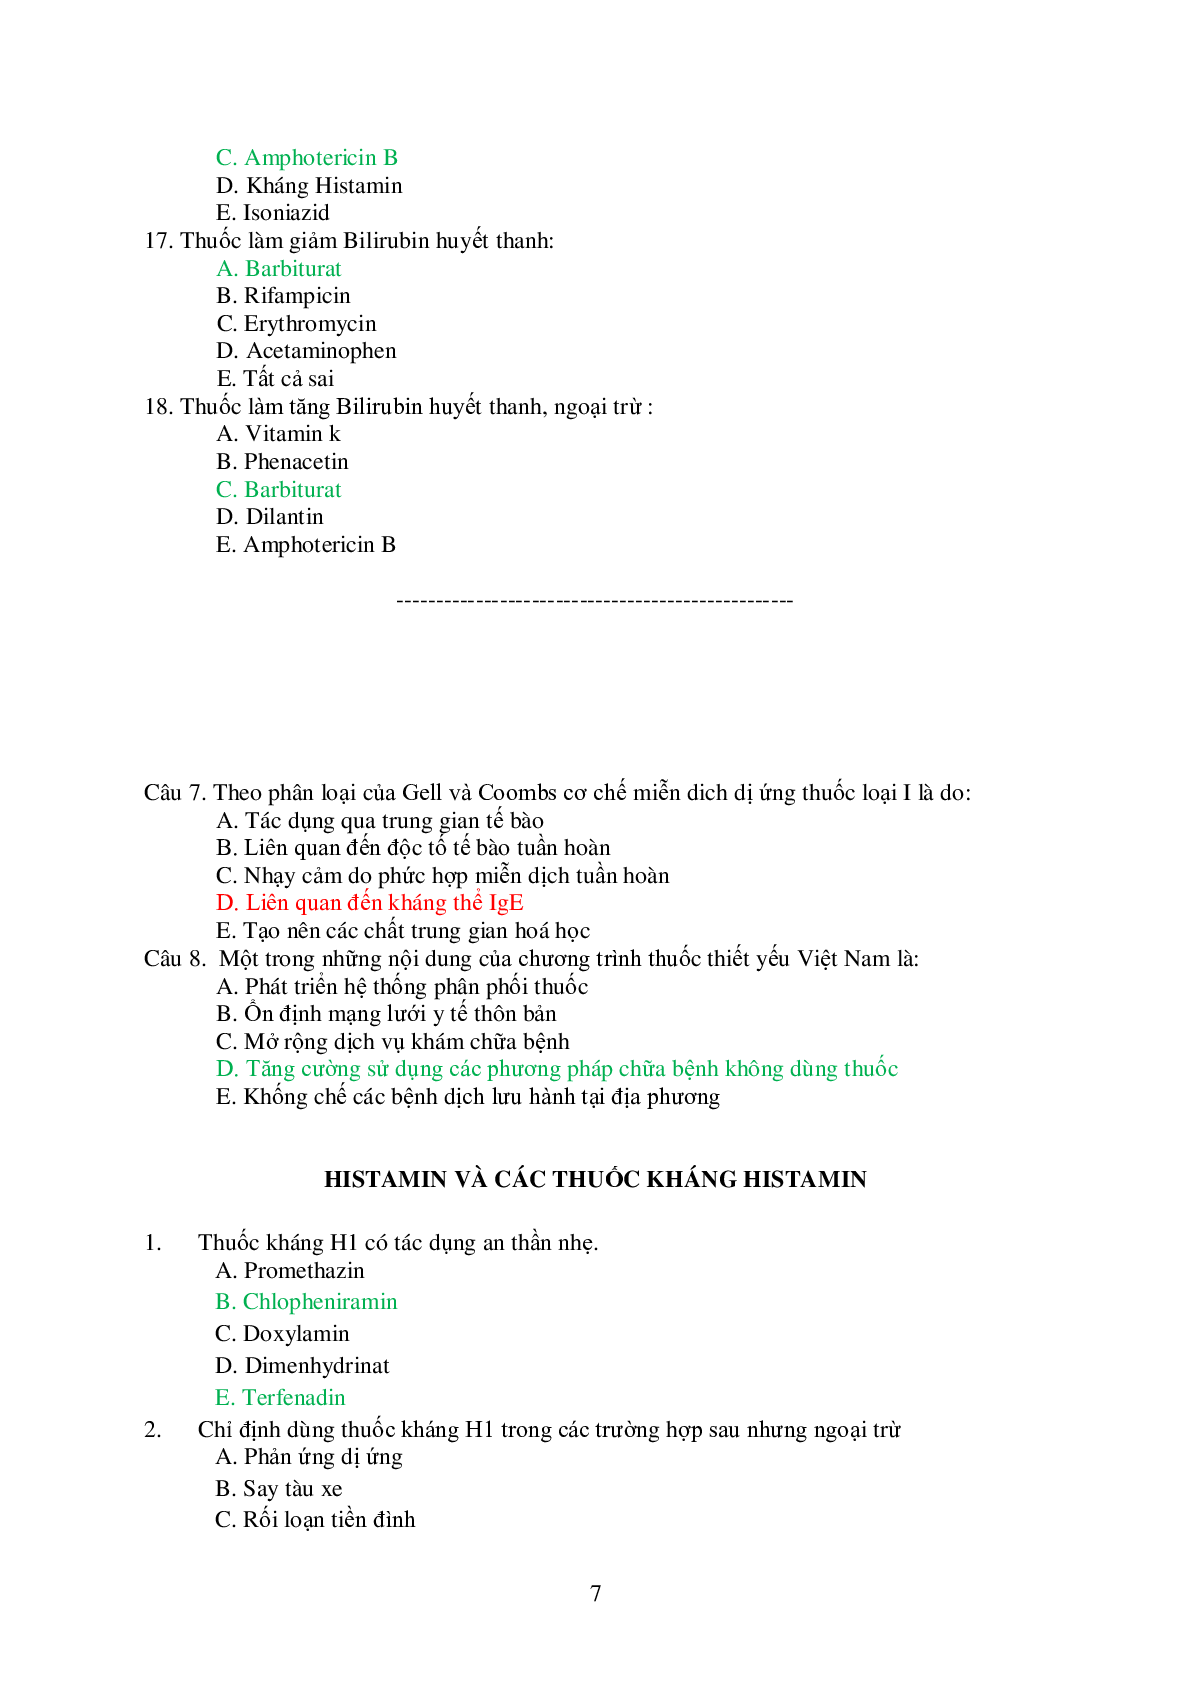 Ngân hàng bài tập trắc nghiệm Dược lý 2 (có đáp án) (trang 7)